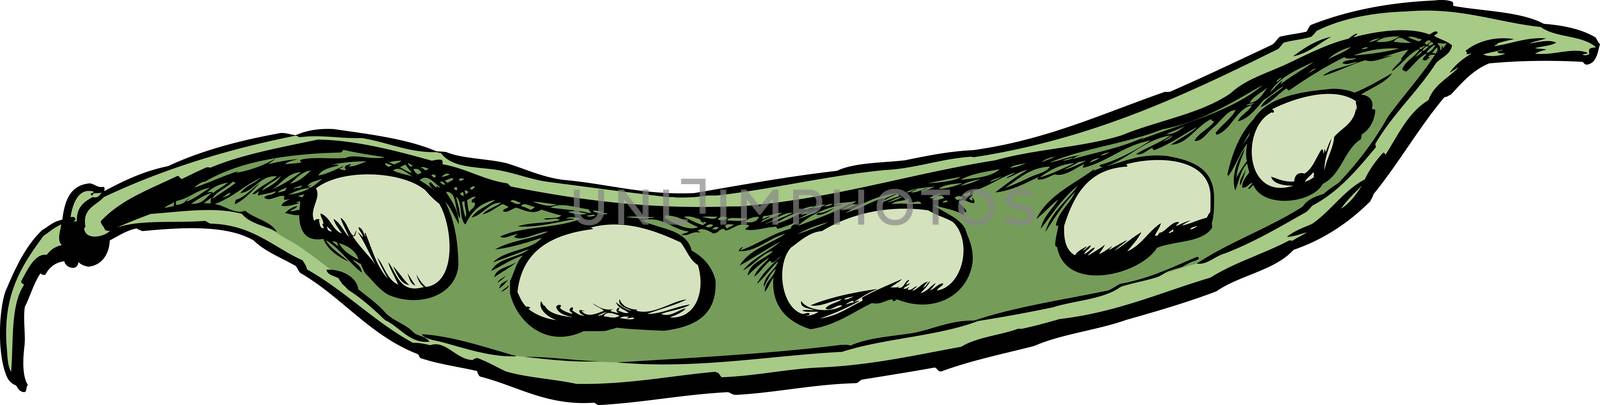 Illustration of fresh green beans in open pod over white